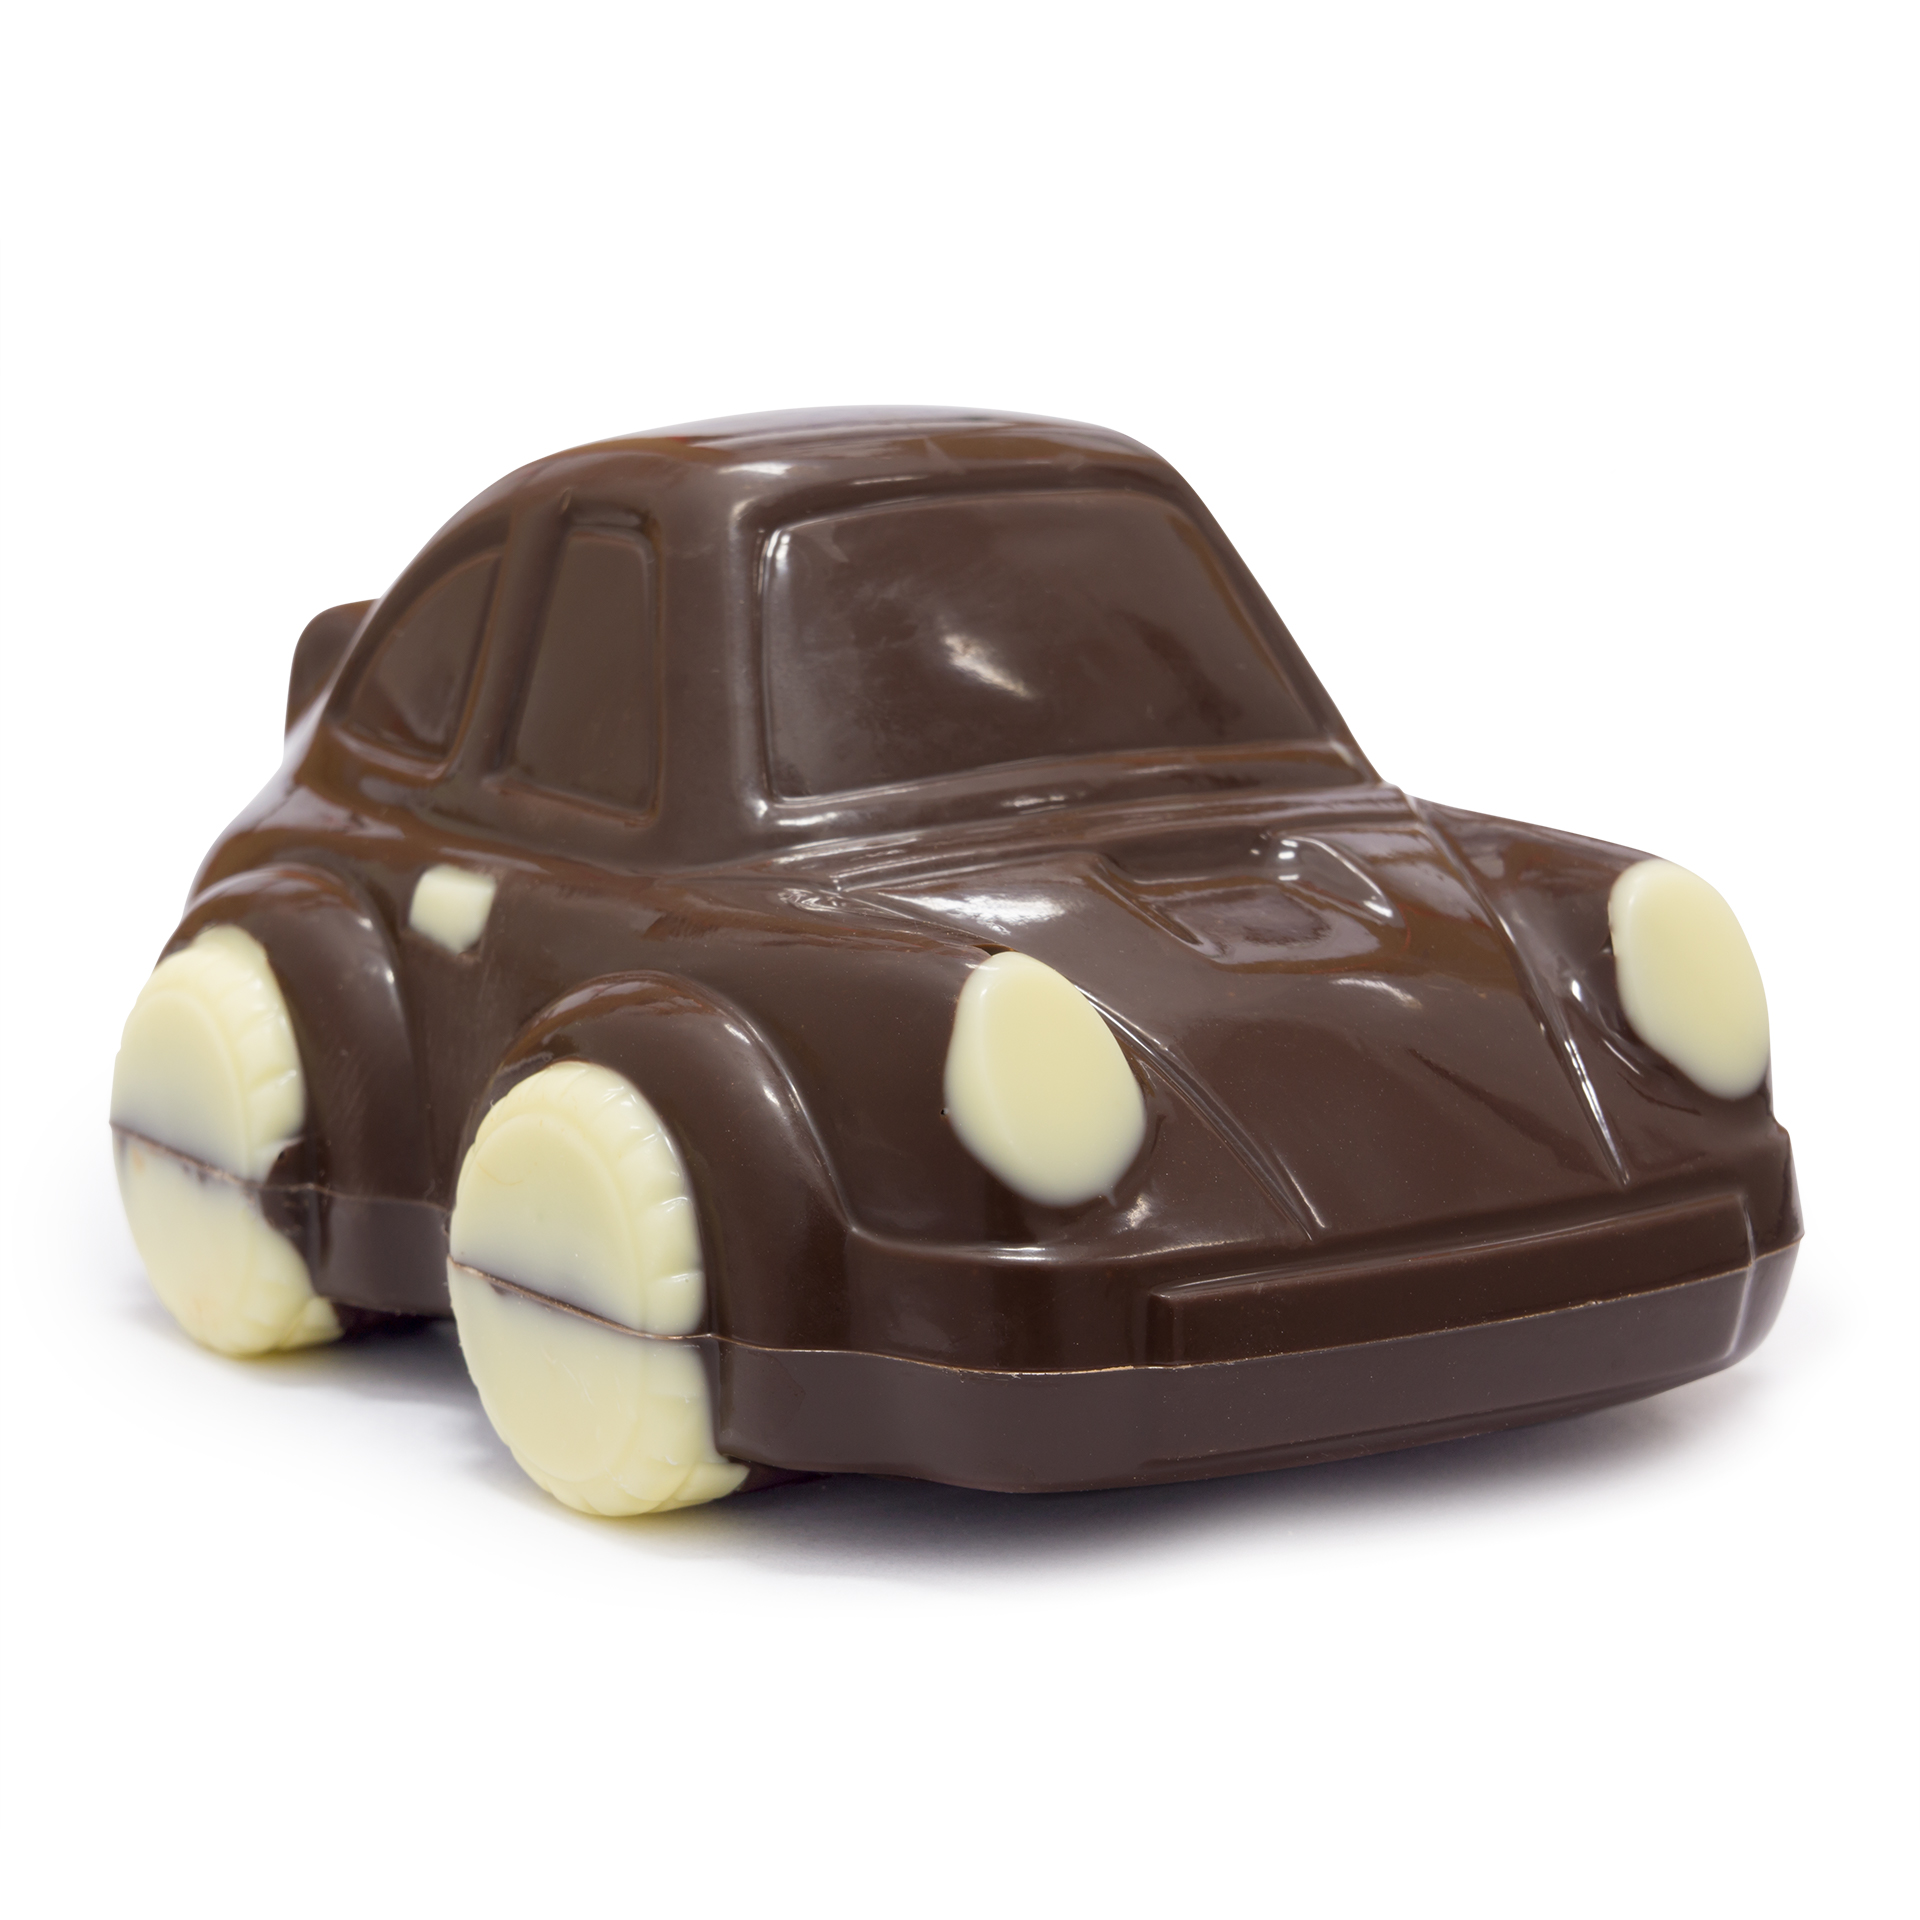 autko z czekolady deserowej